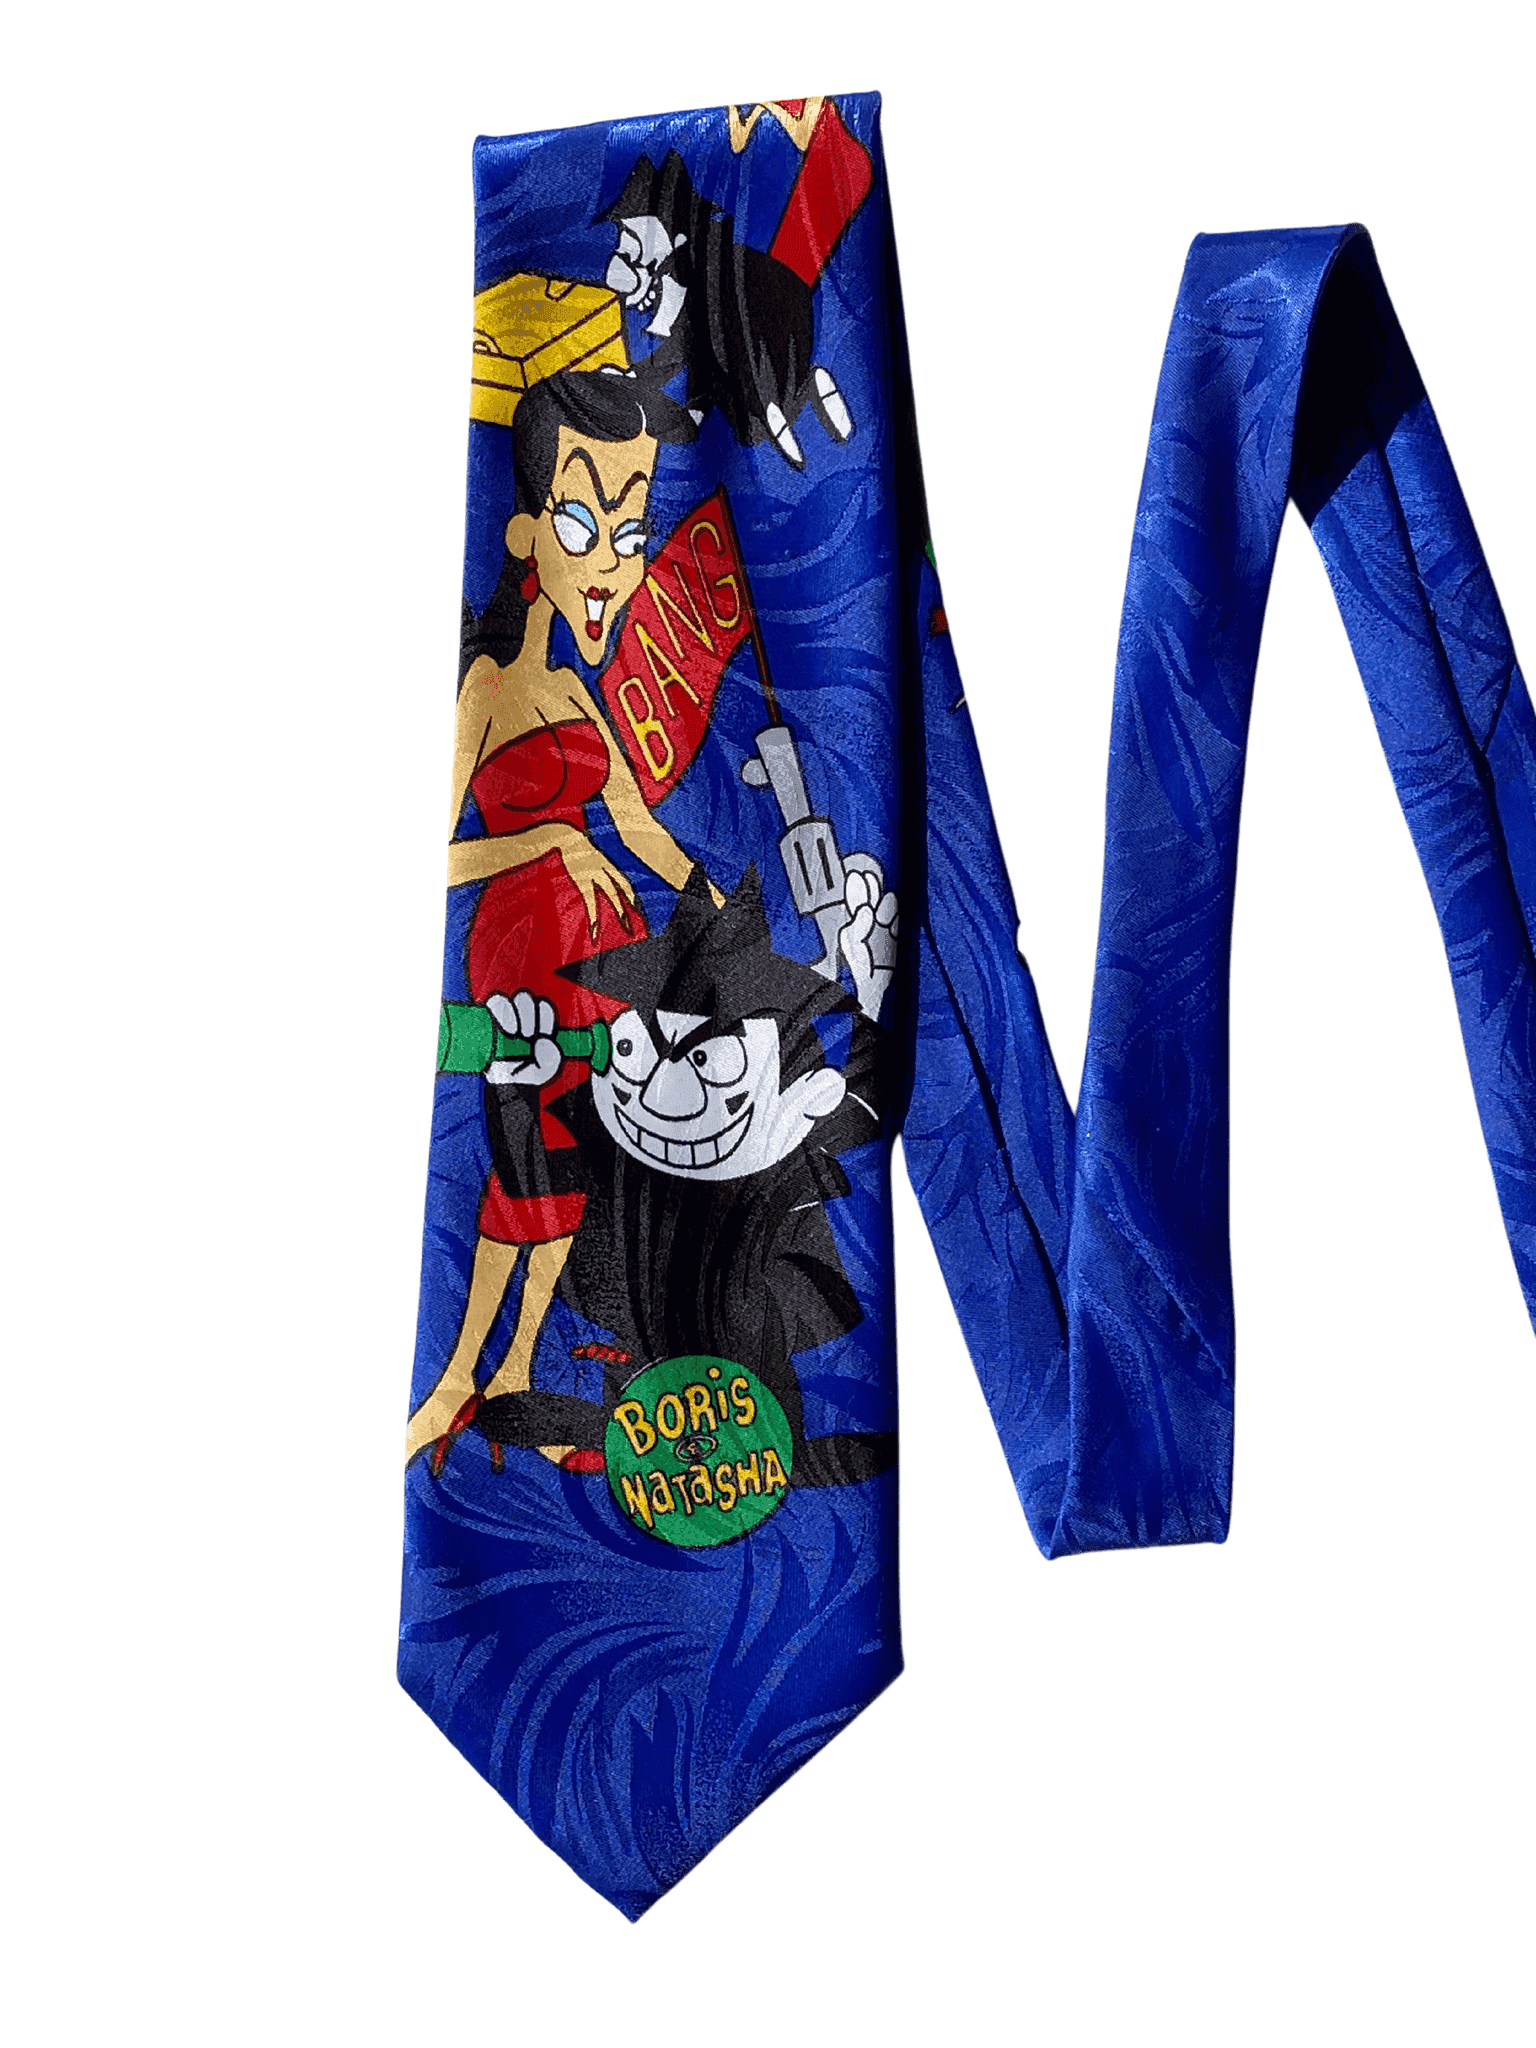 Vintage Graphic Tie - Balagan Vintage Ties graphic, graphic ties, printed tie, printed ties, tie, vintage, vintage ties